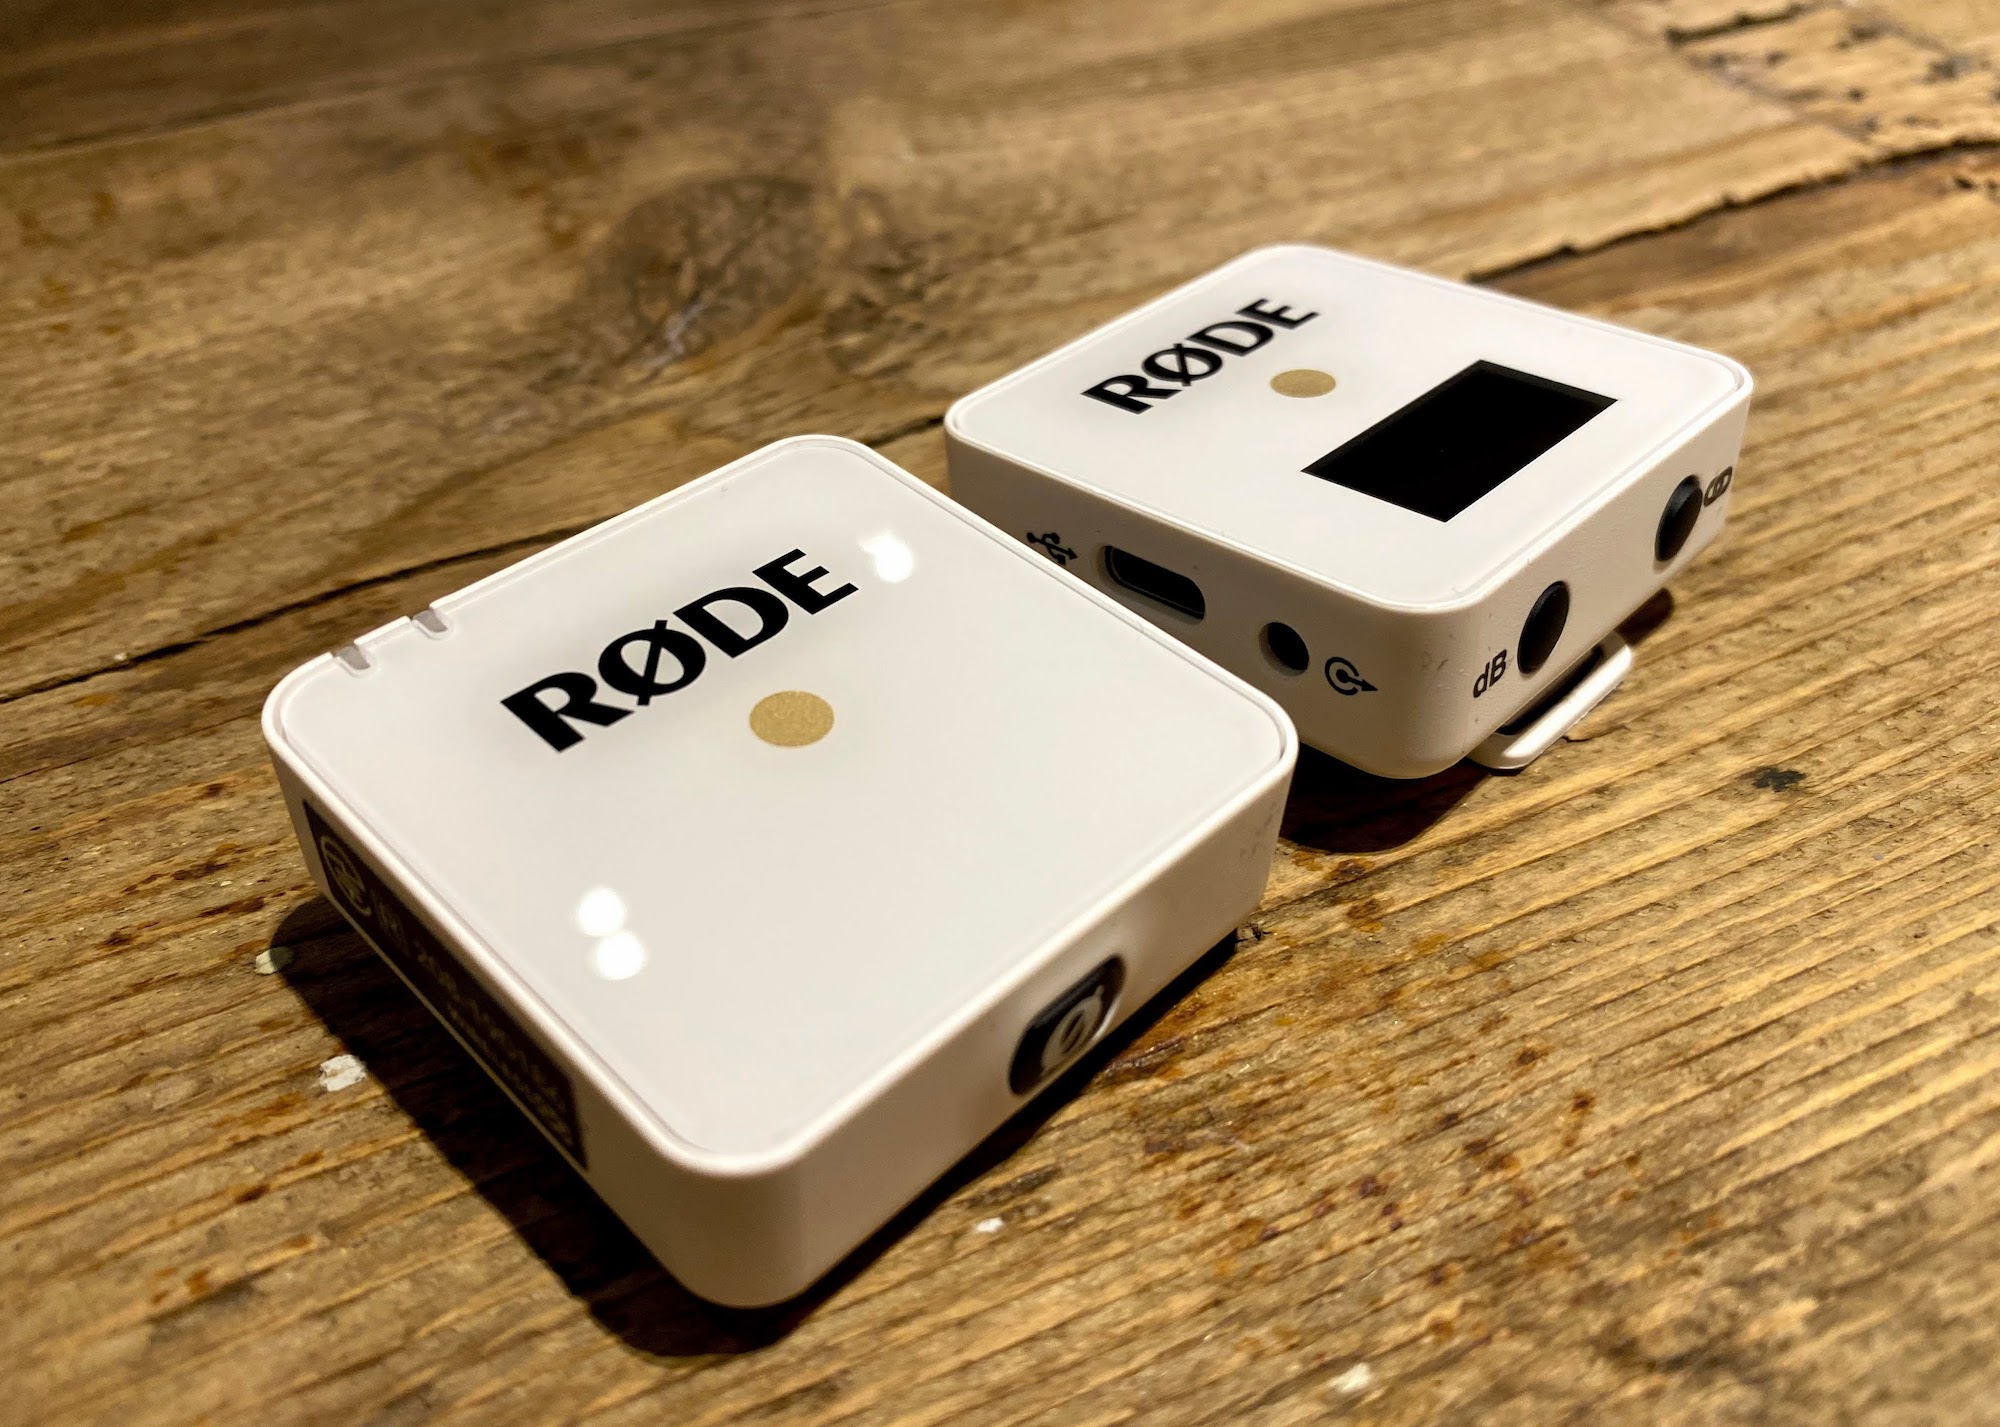 オーディオ機器 その他 世界最小ワイヤレスマイクシステム・RØDEの「Wireless Go」を購入 